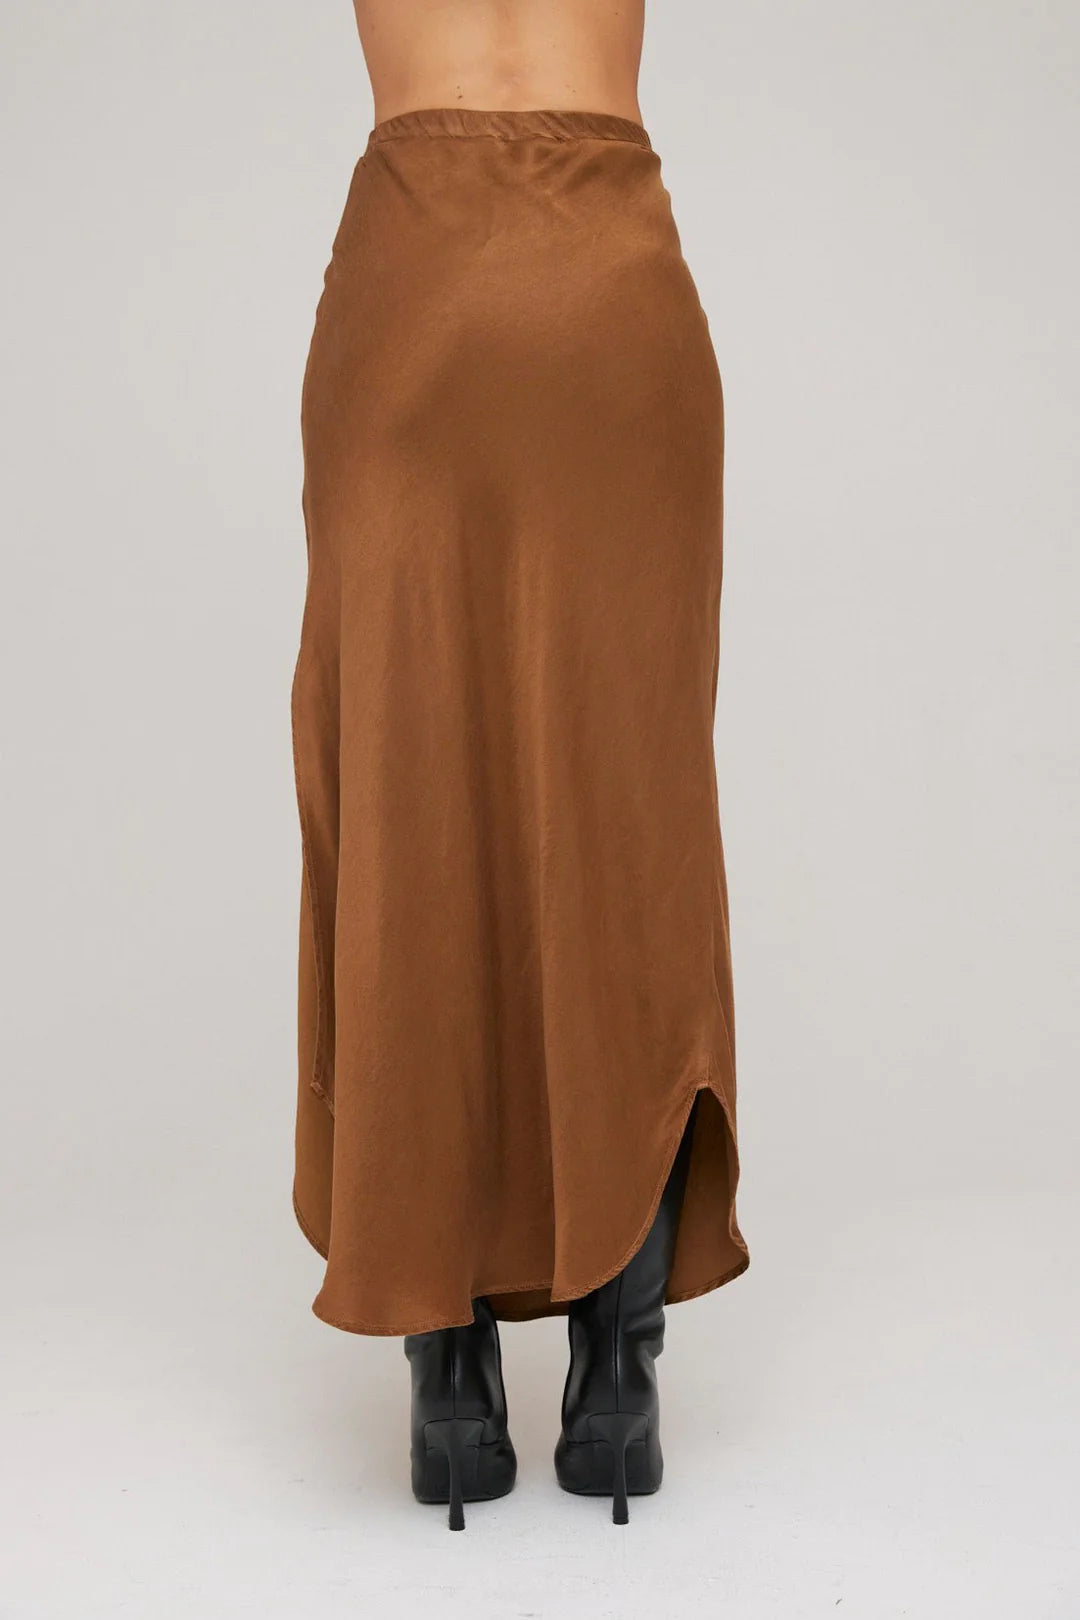 Satin Asymmetric Side Slit Bias Skirt in Twilight Gold